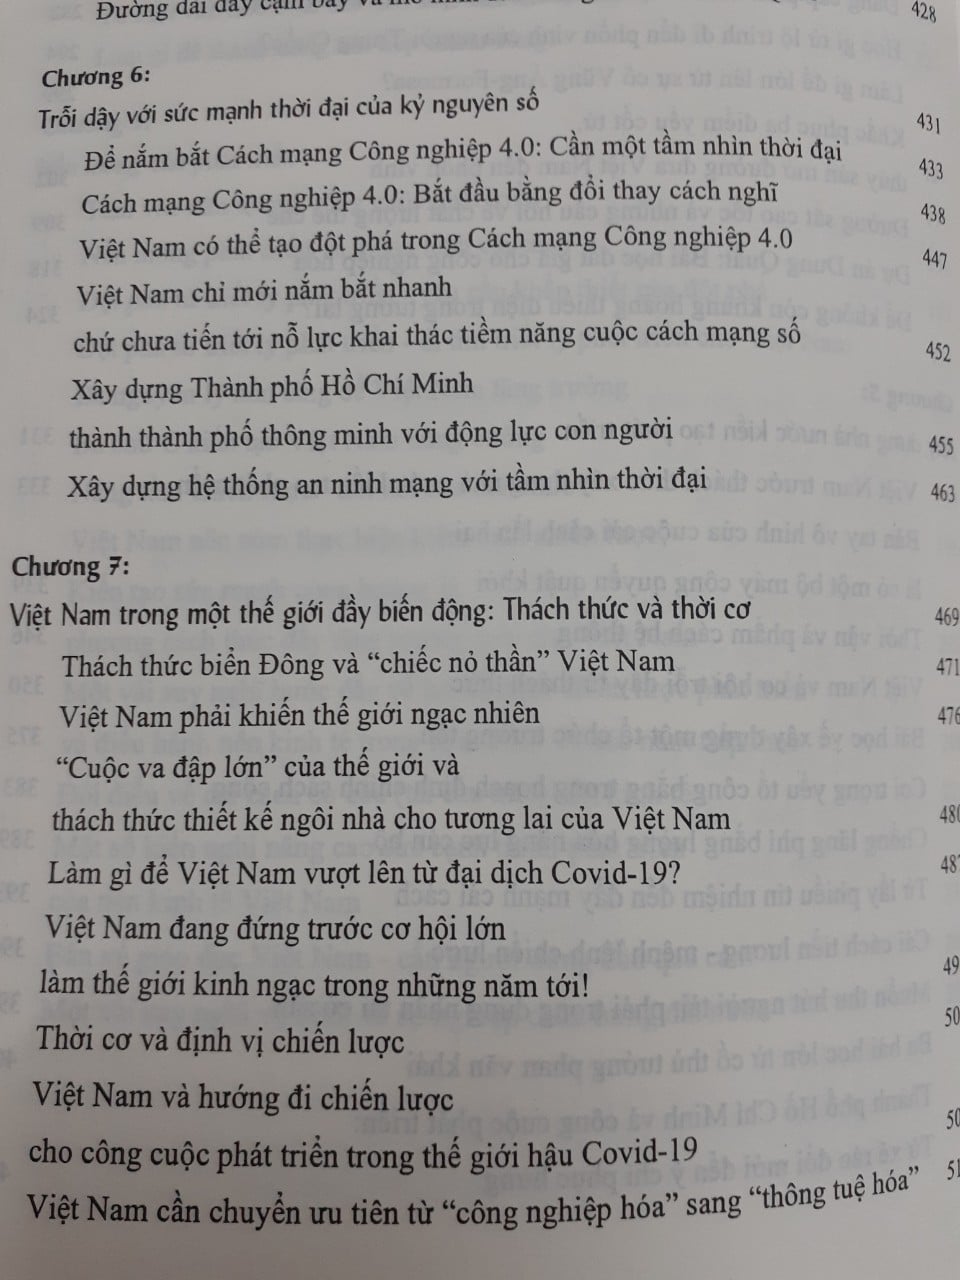 Hãy Trỗi dậy, Việt Nam Vũ Minh Khương